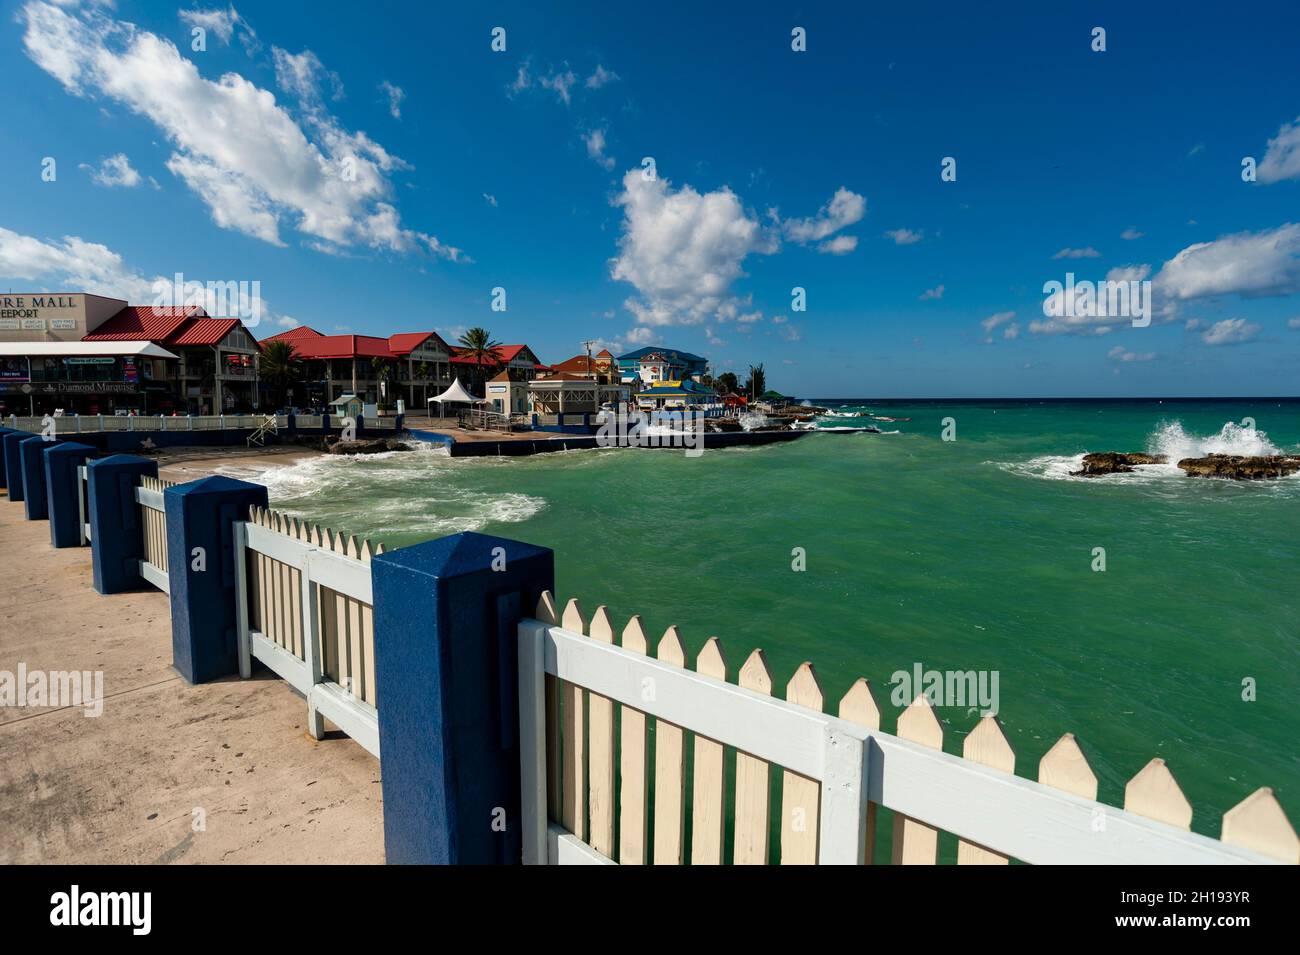 Vue panoramique sur le front de mer de George Town, sur la mer des Caraïbes.George Town, Grand Cayman Island, Cayman Islands. Banque D'Images